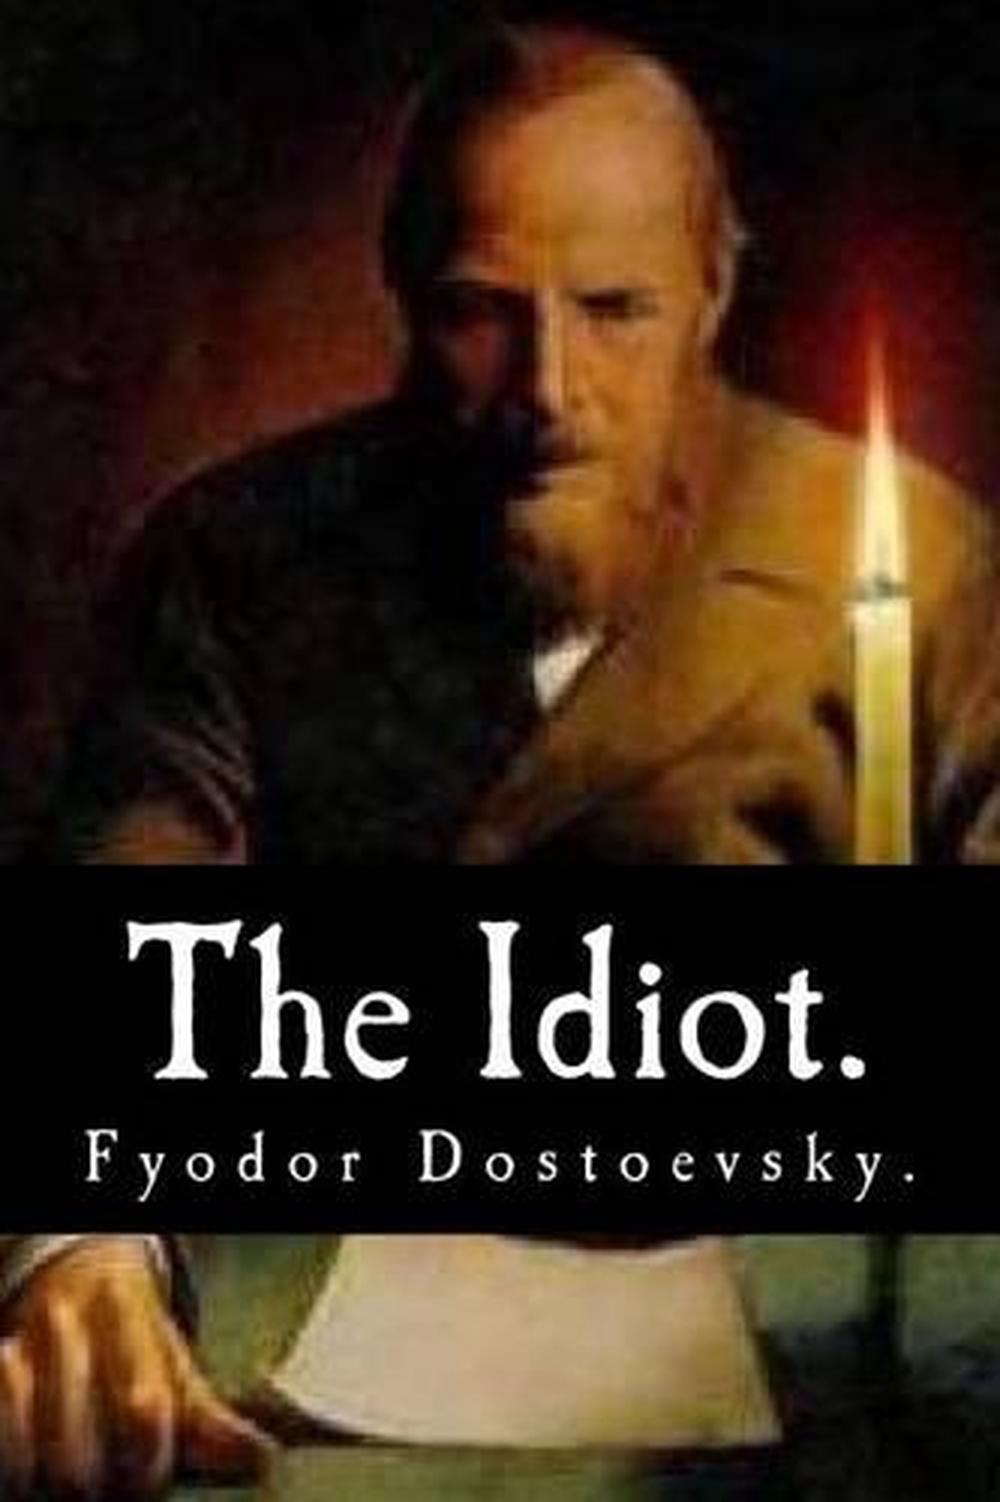 the idiot book dostoevsky